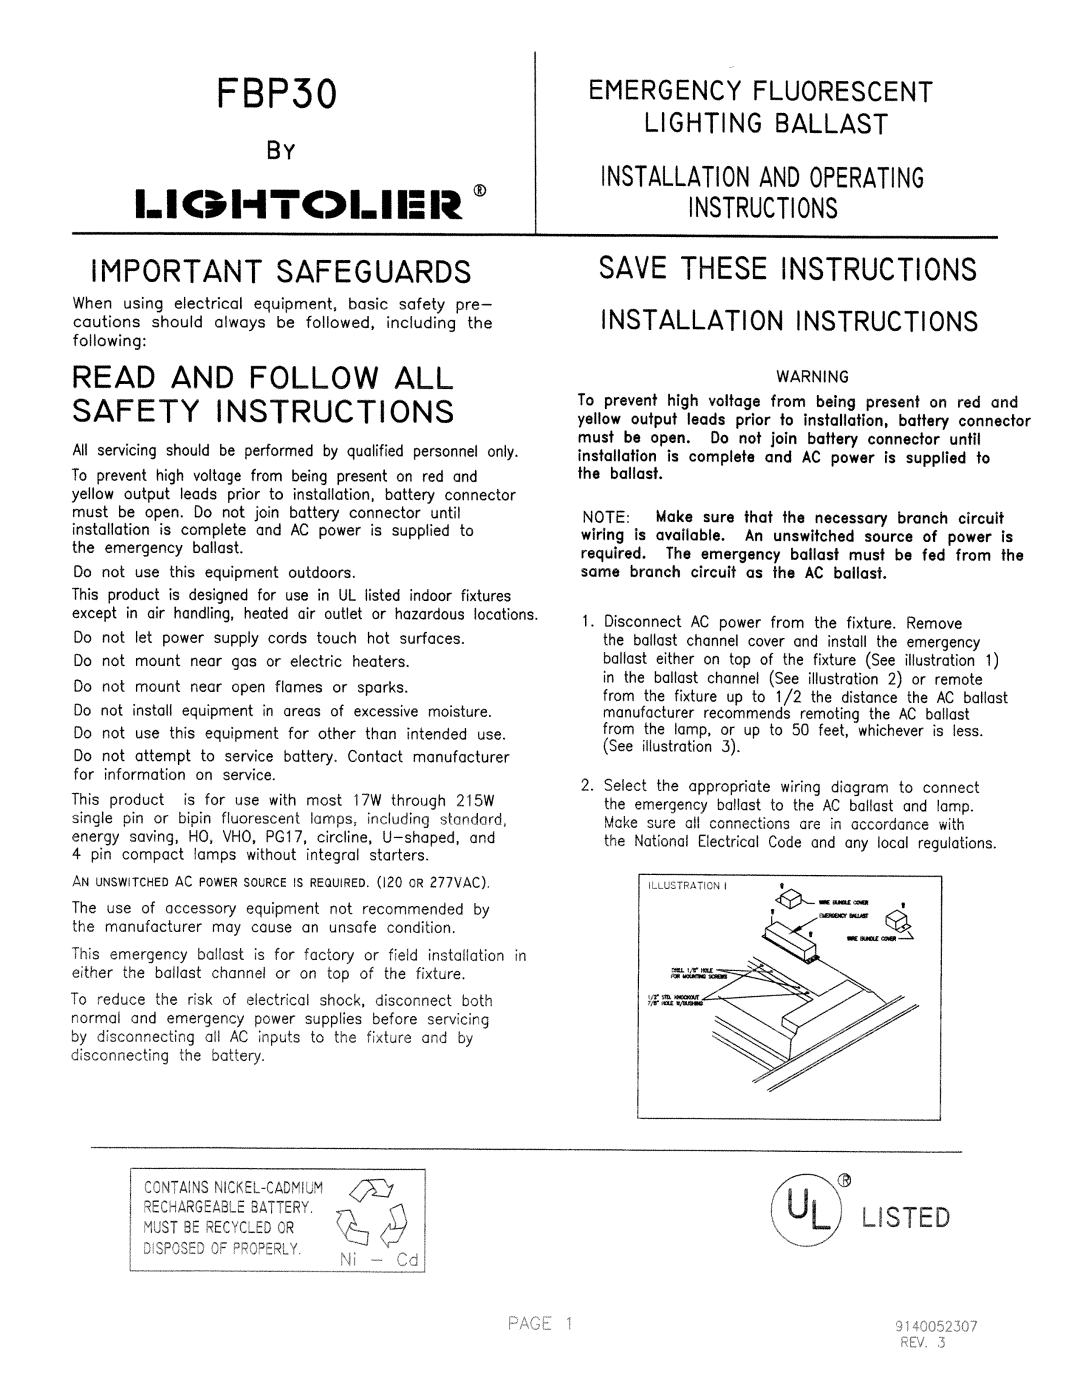 Lightolier FBP30 manual 